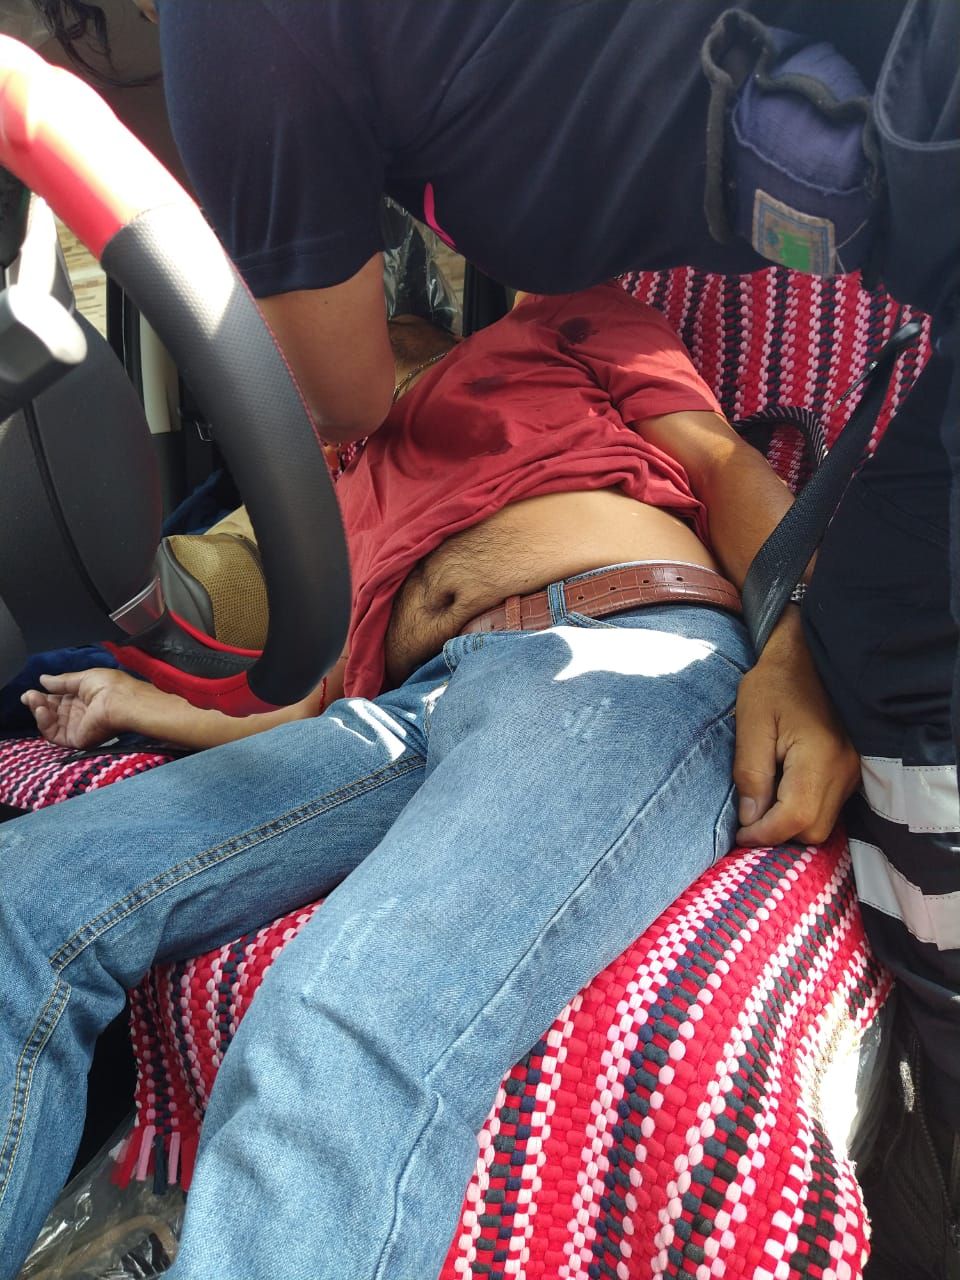 Apareció otro ejecutado en Los Reyes La paz, grave inseguridad denuncian los habiantes